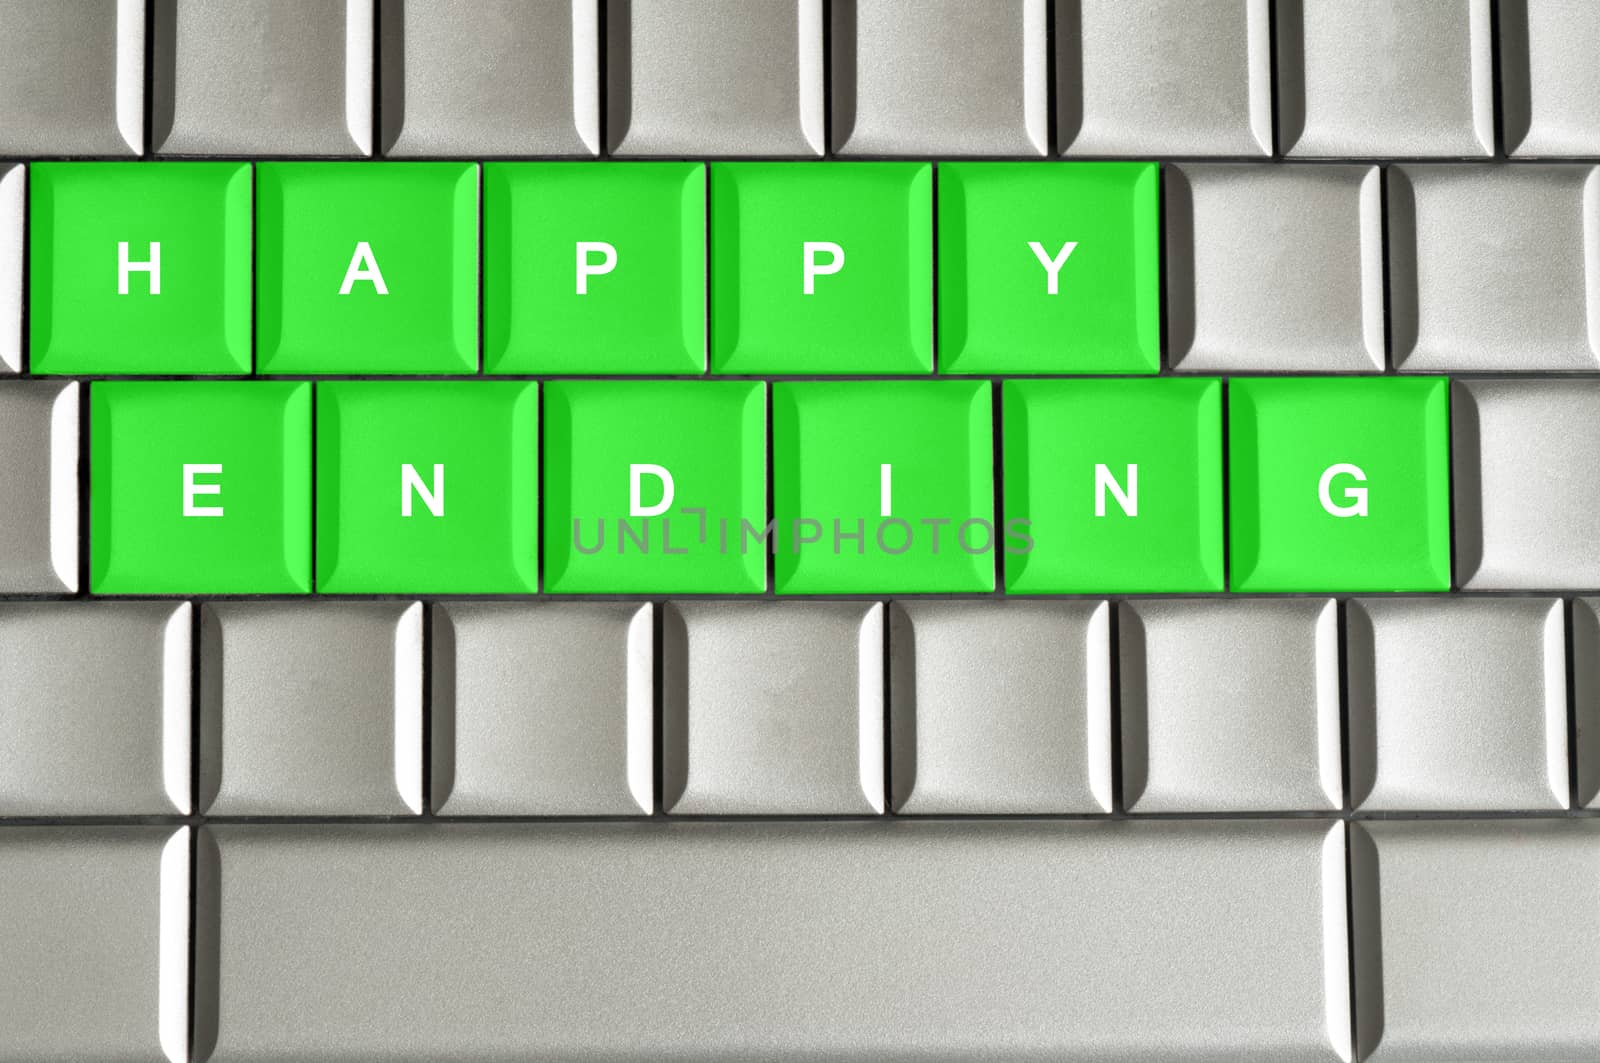 Happy ending spelled on a silver metallic keyboard